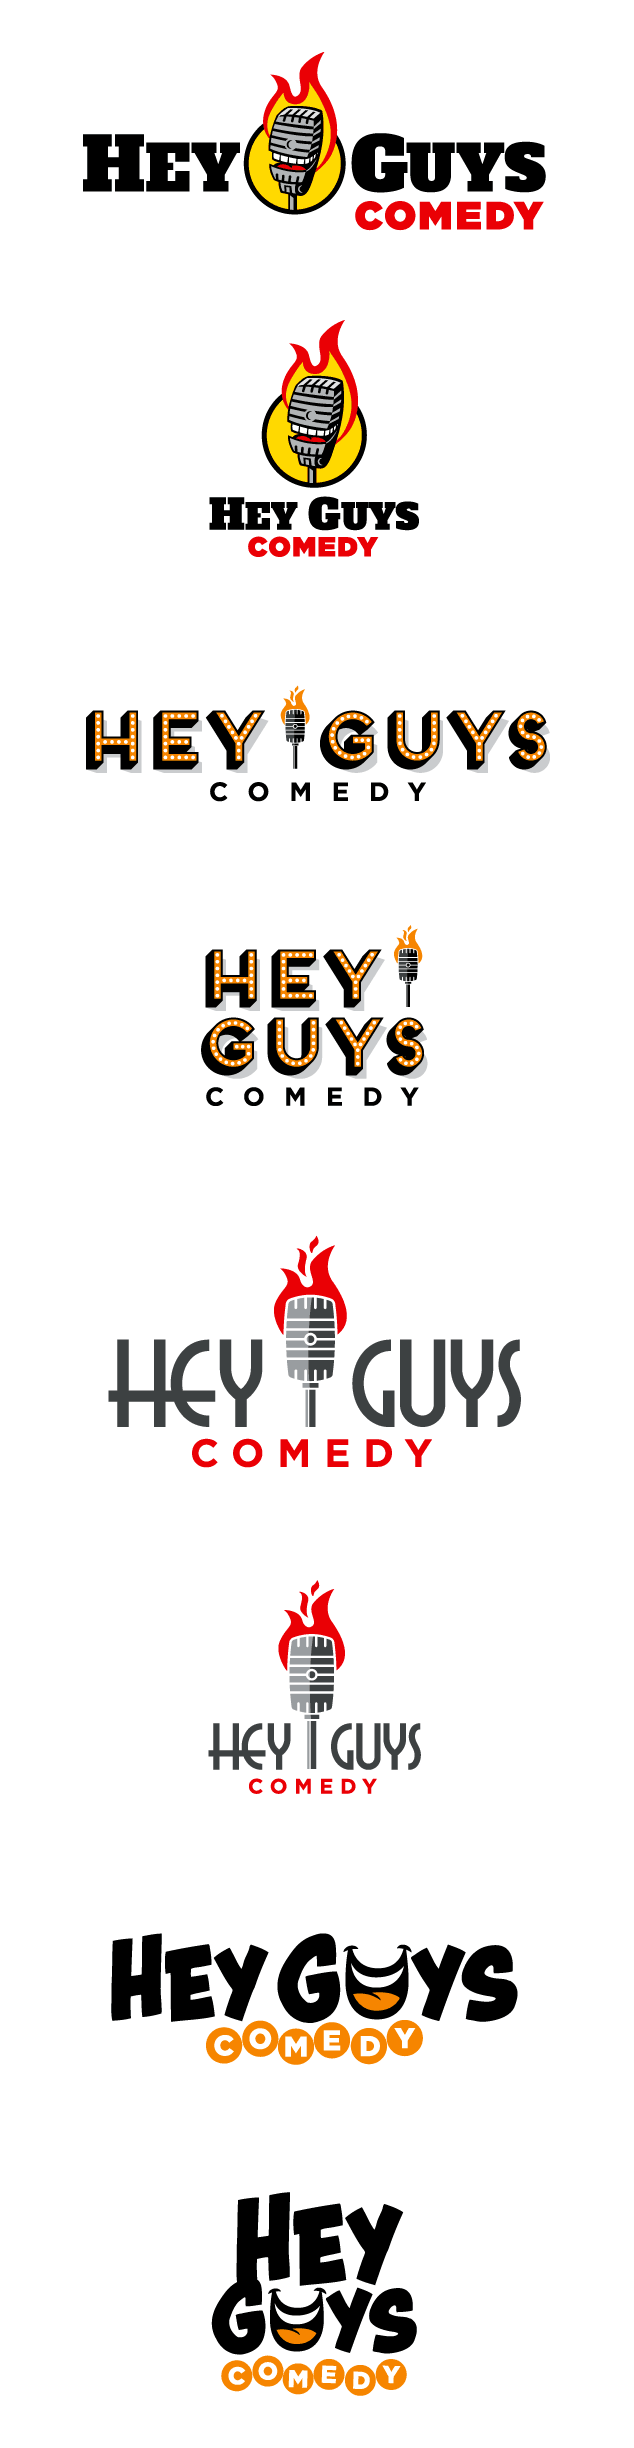 Comedy Logos | 216 Custom Comedy Logo Designs - Page 9